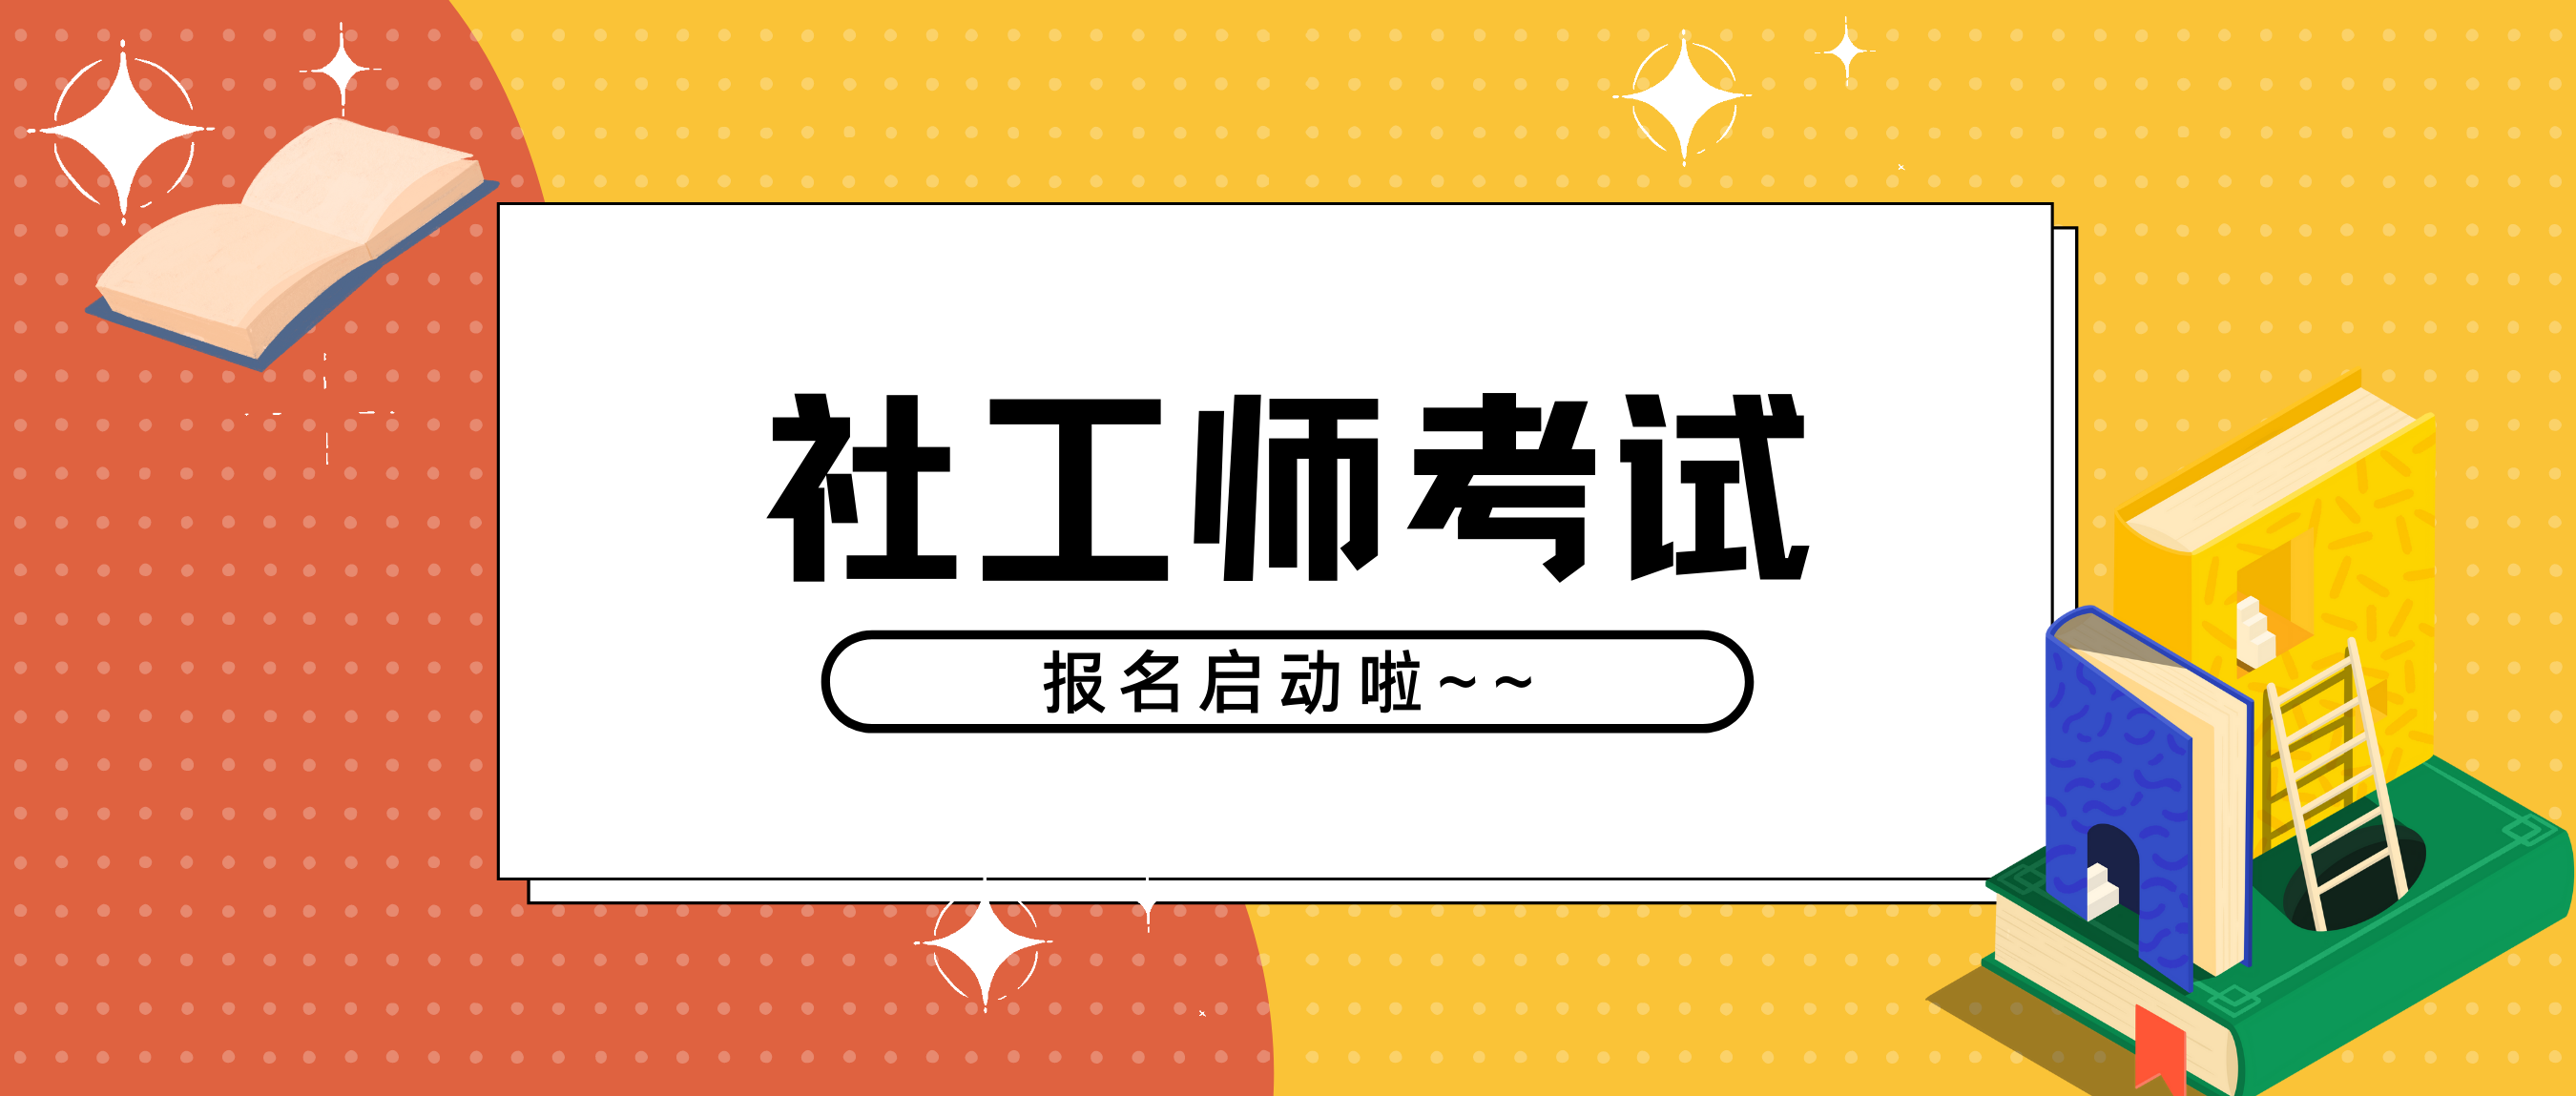 最后三天2021年社工师考试四川省8月22日截止报名